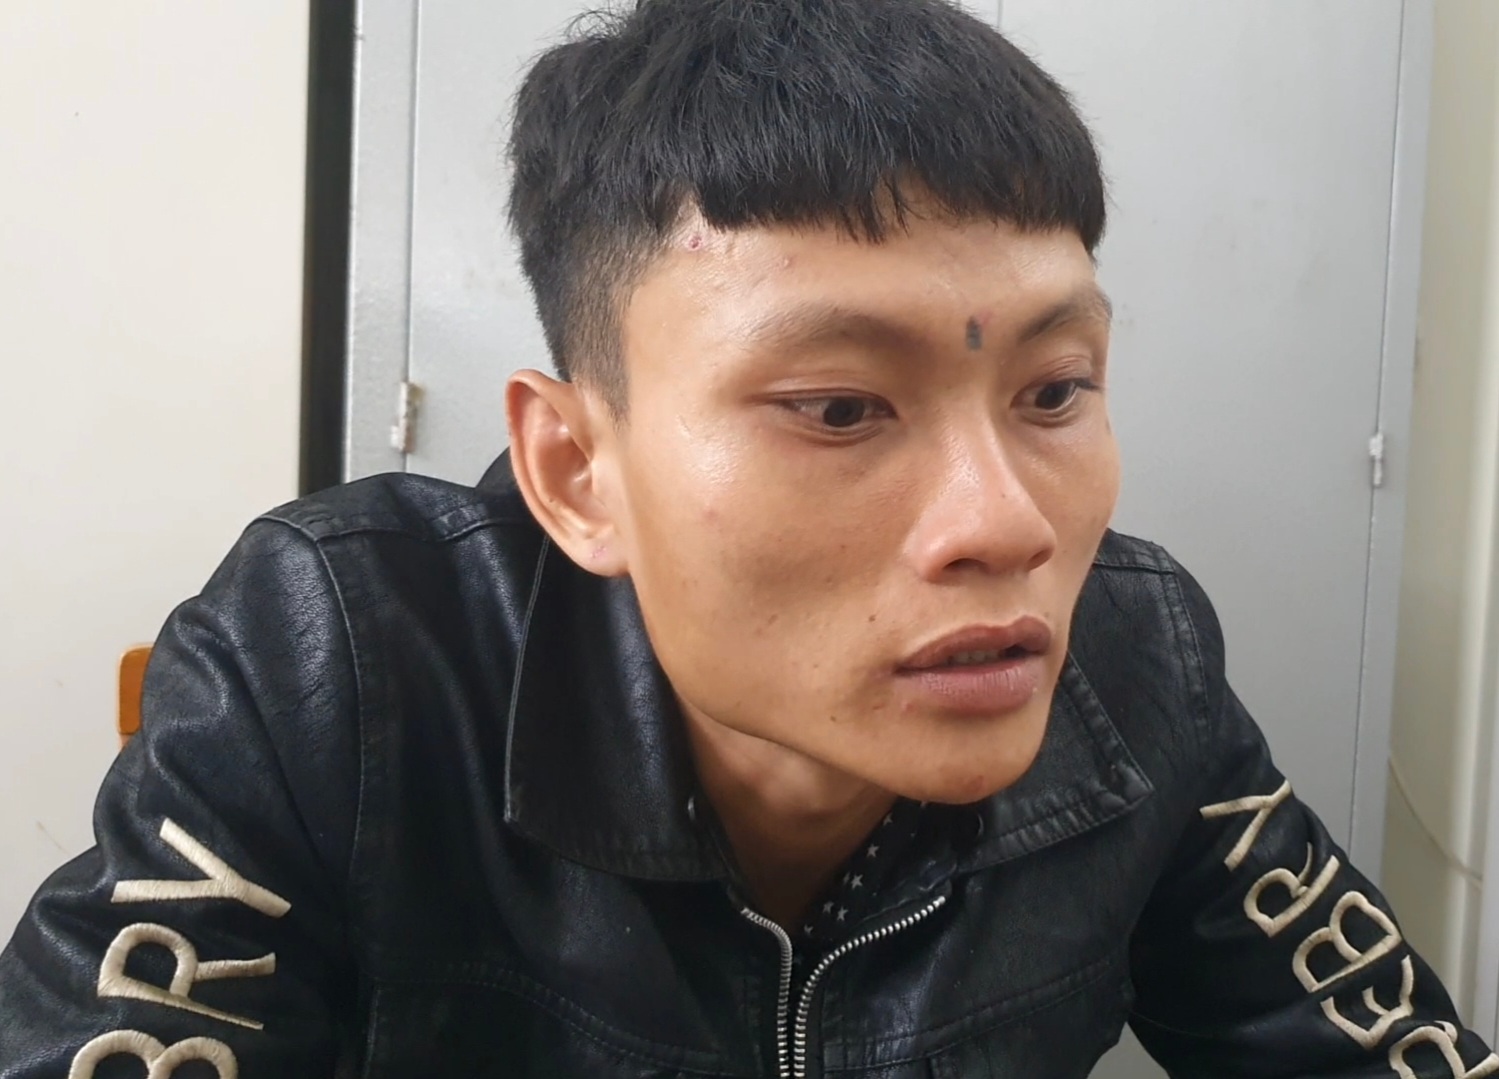 Nghi phạm cướp giật tài sản của du khách khi đi bộ trên đường phố bị Công an thành phố Nha Trang bắt giữ sau 24h. Ảnh: Phương Linh